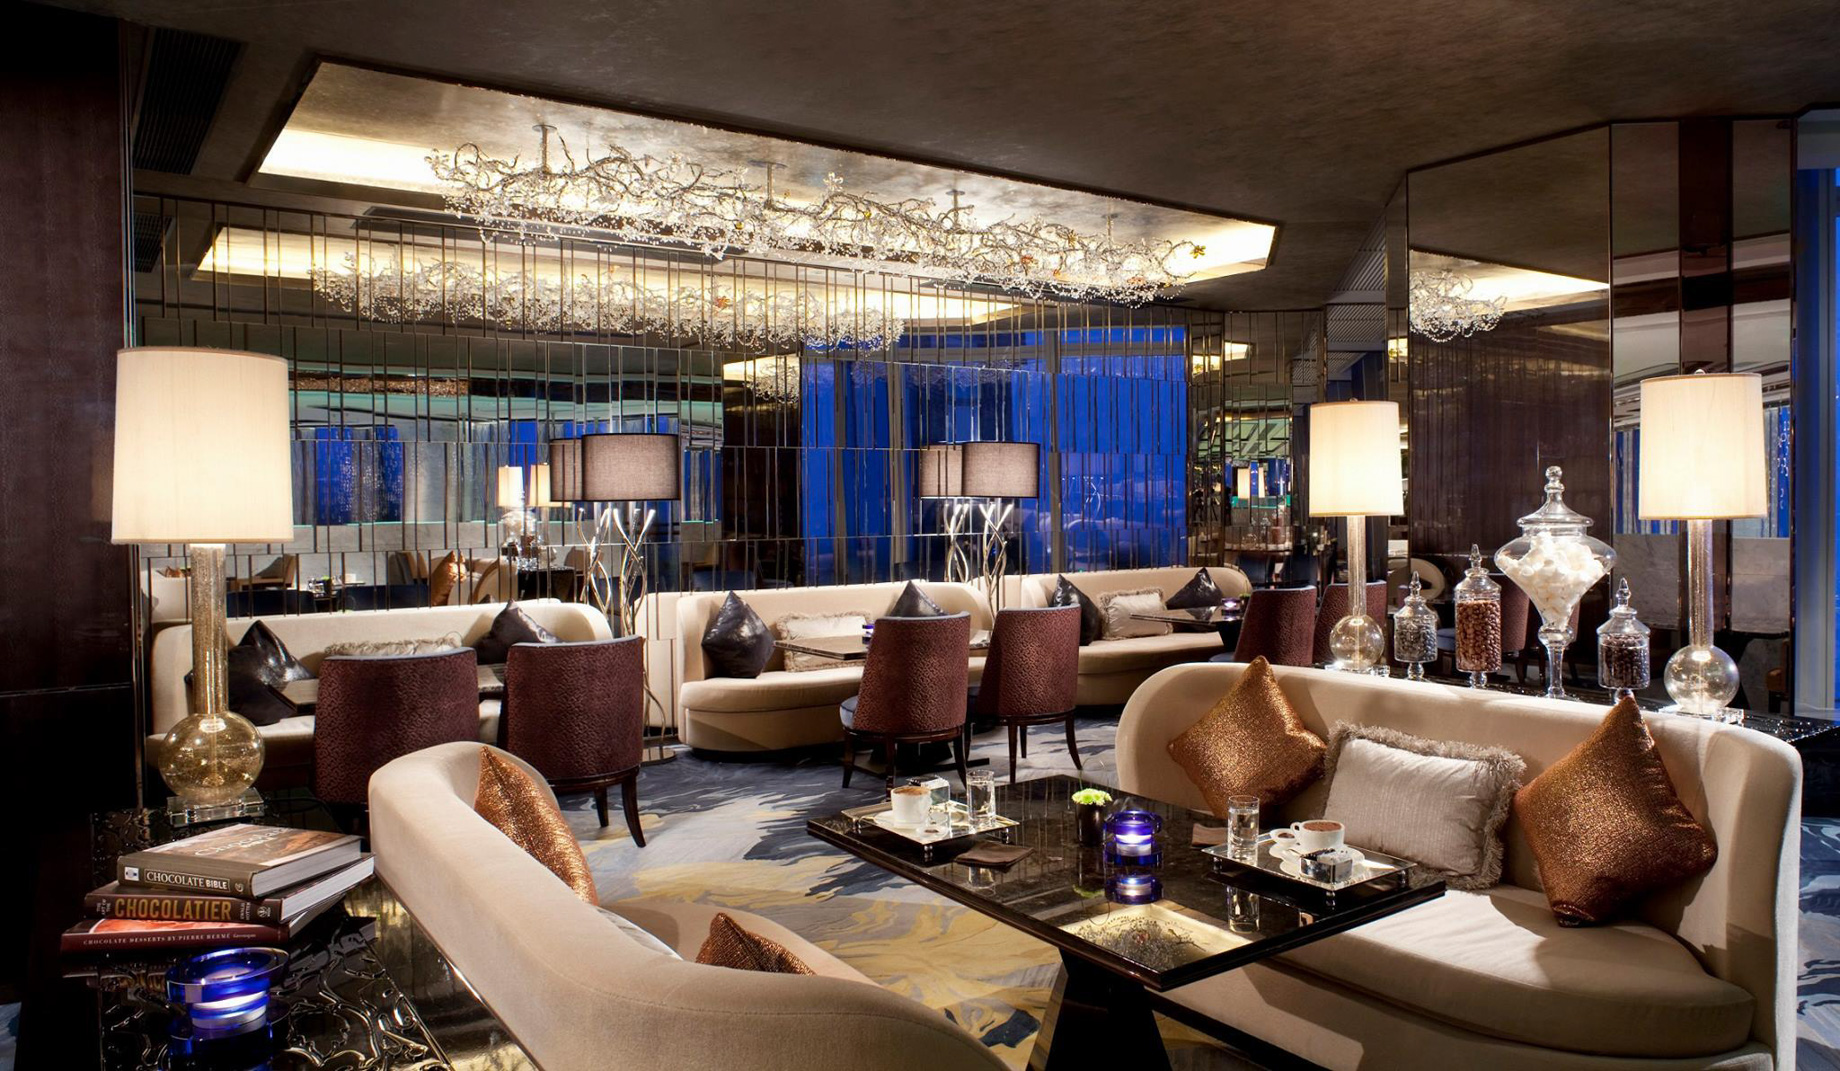 The Ritz-Carlton, Hong Kong Hotel – West Kowloon, Hong Kong – Cafe 103